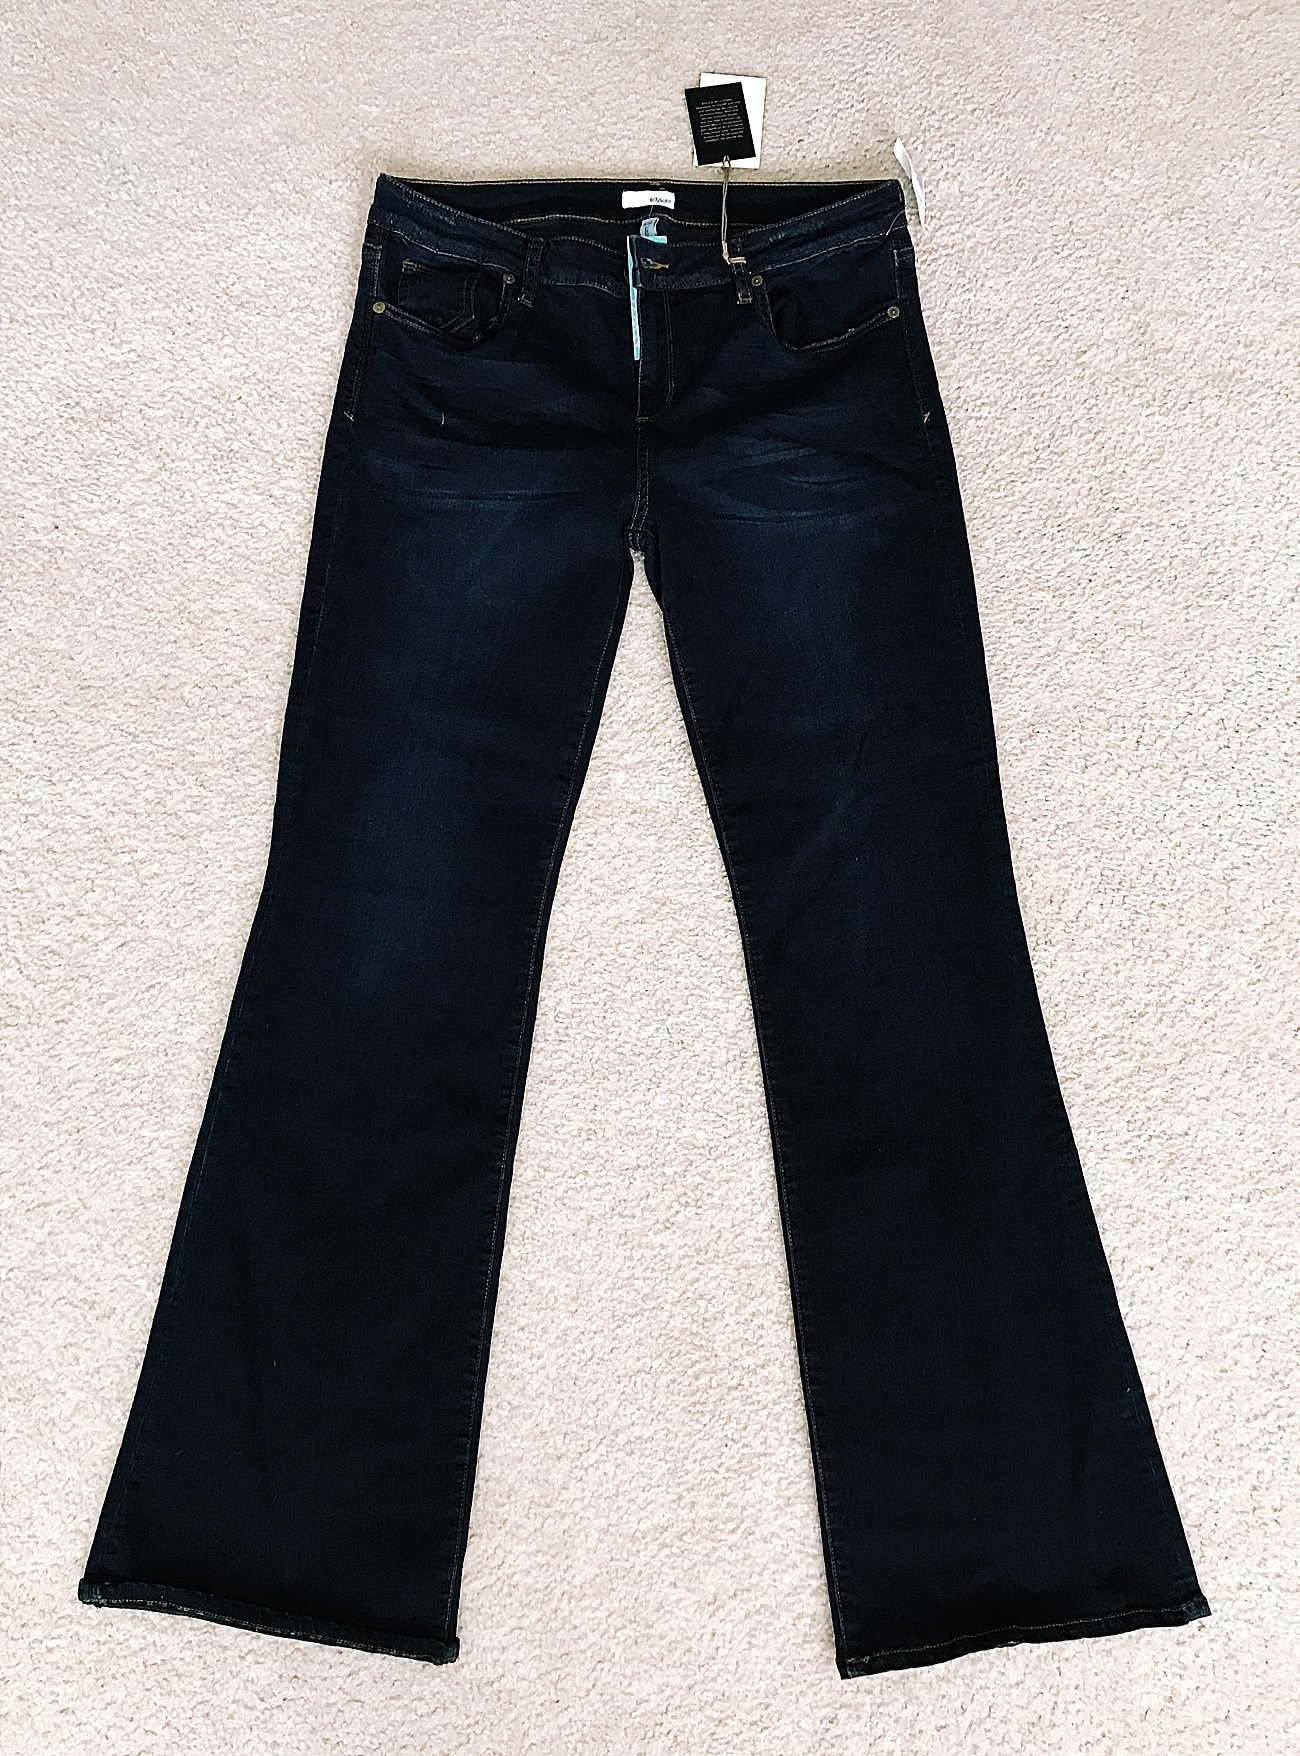 Edyson "Mayfare Bootcut Jean" - Size 14 - $58